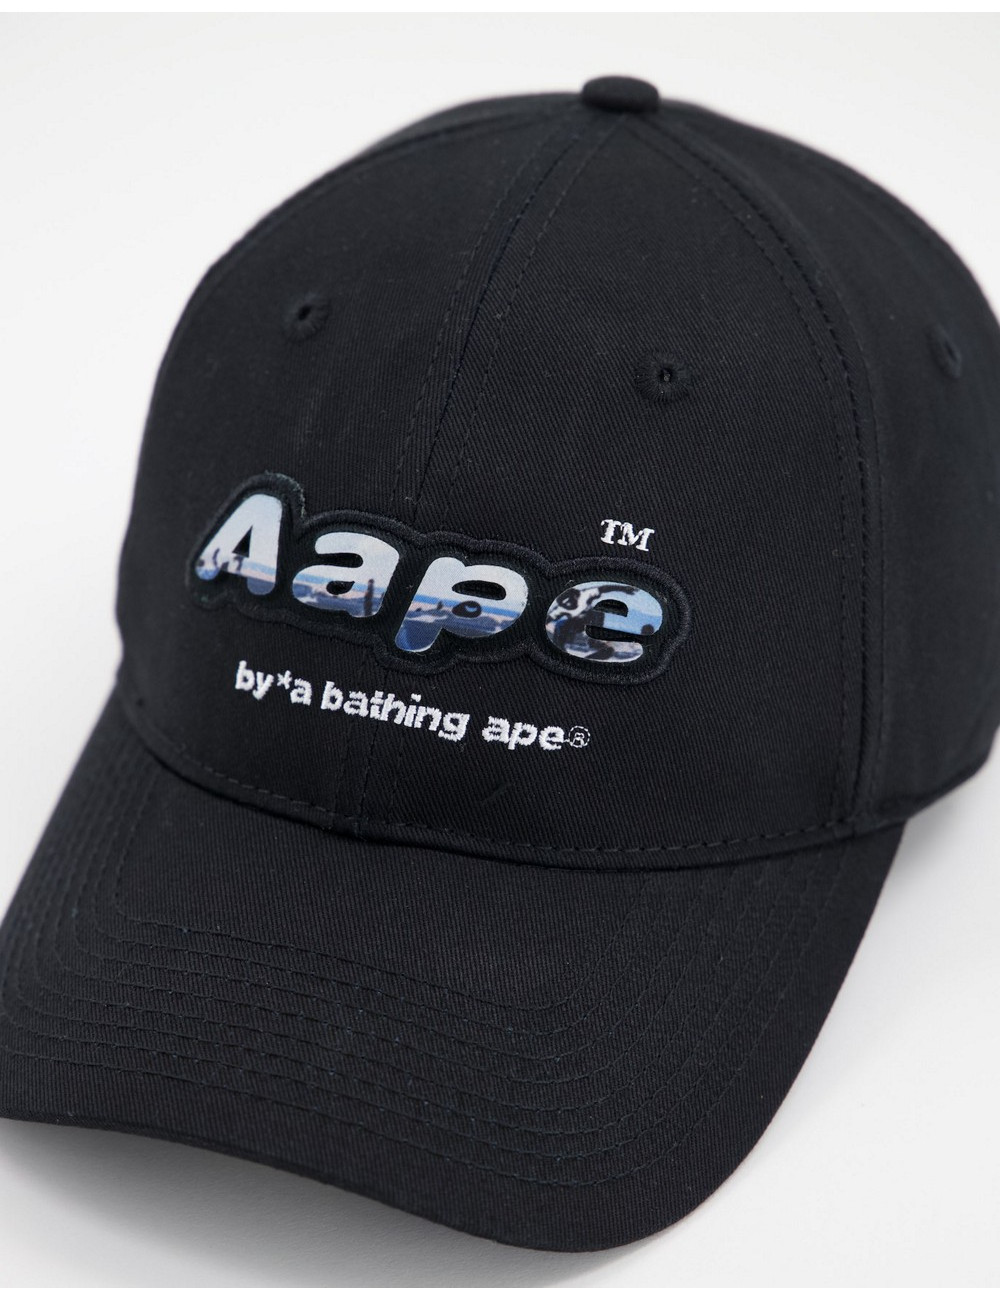 AAPE By A Bathing Ape logo...